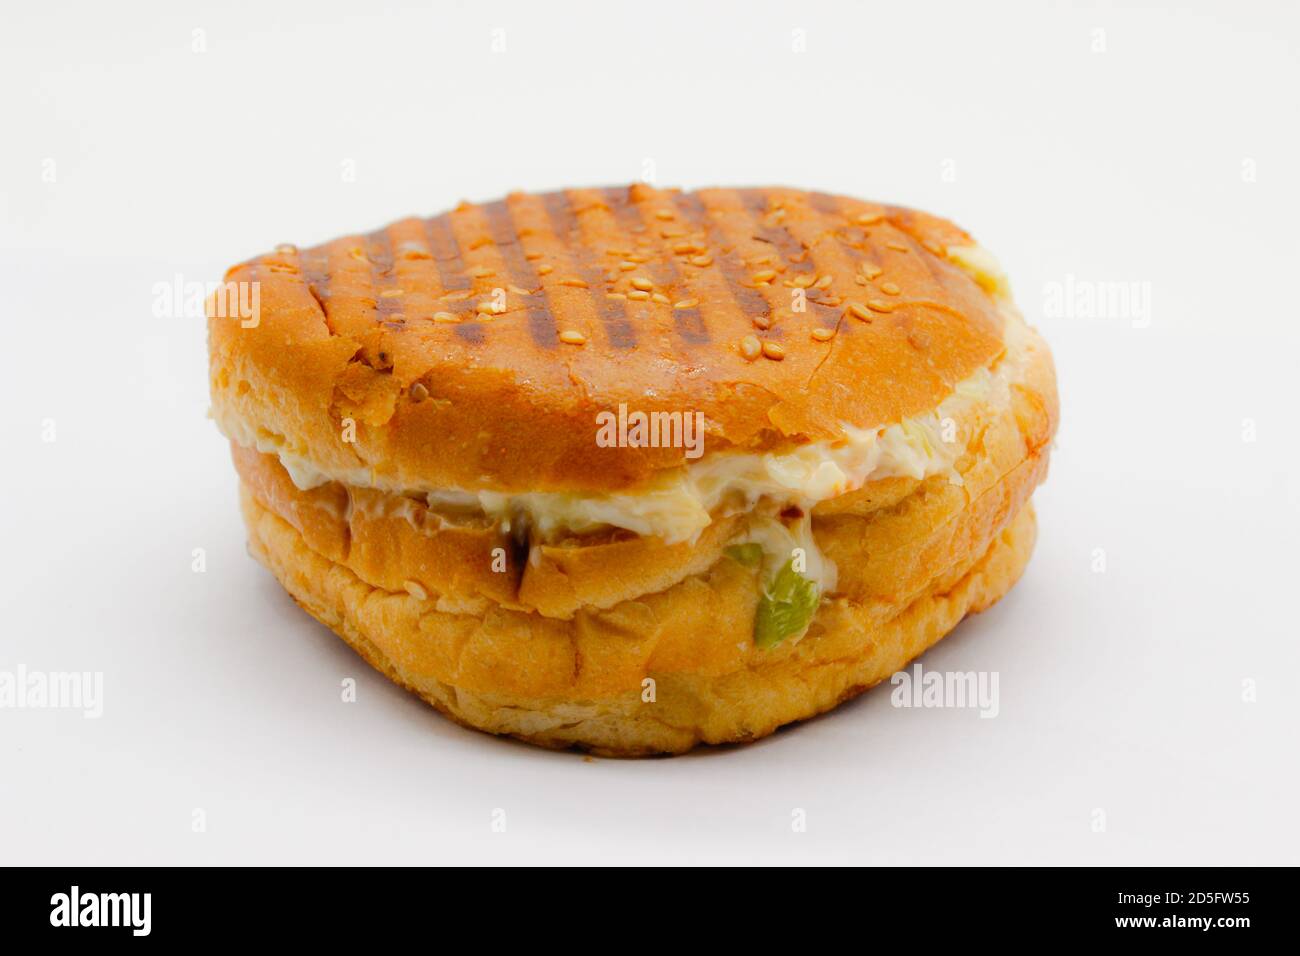 Une photo de hamburger sur fond blanc Banque D'Images